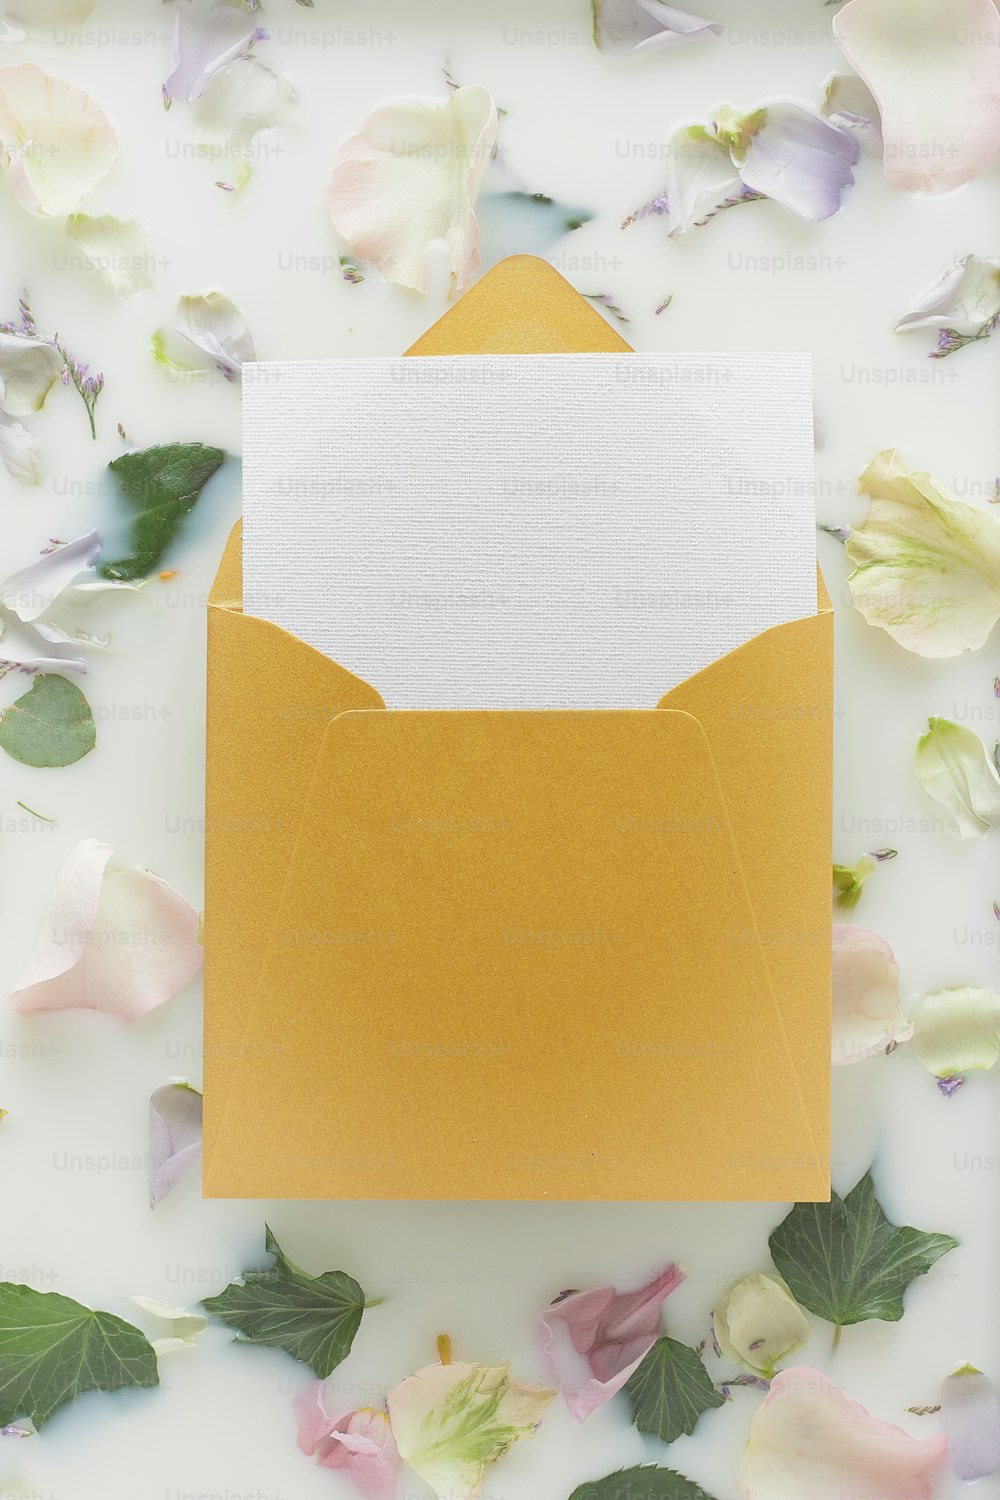 Un sobre amarillo con una tarjeta blanca en el interior rodeada de flores